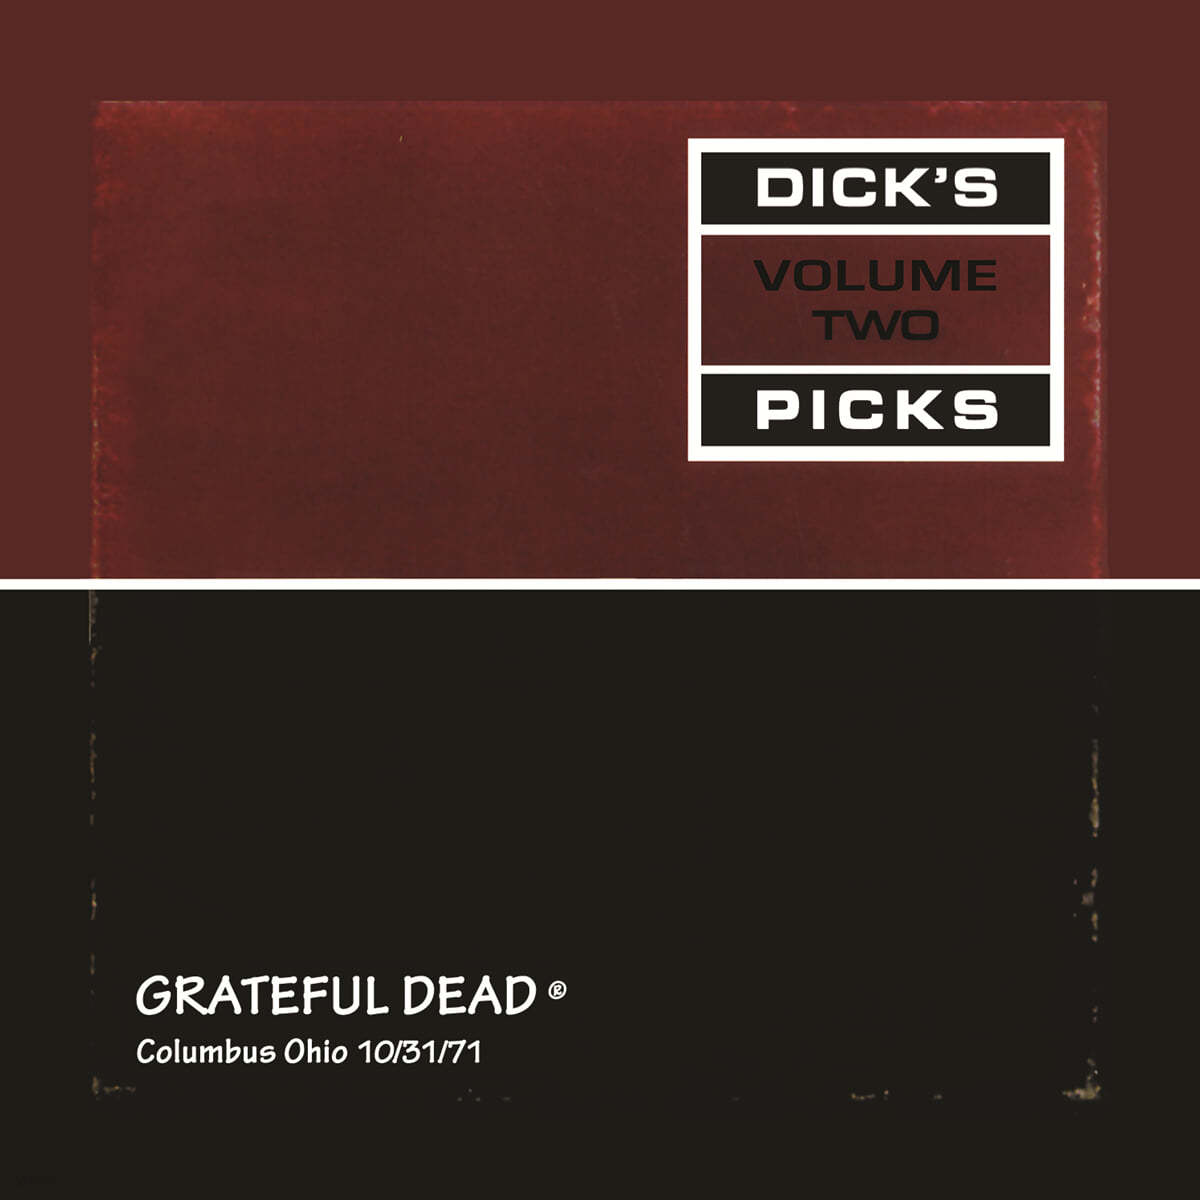 Grateful Dead (그레이트풀 데드) - Dick's Picks Vol. 2 ㅡ Columbus, Ohio 10/31/71 [2LP]